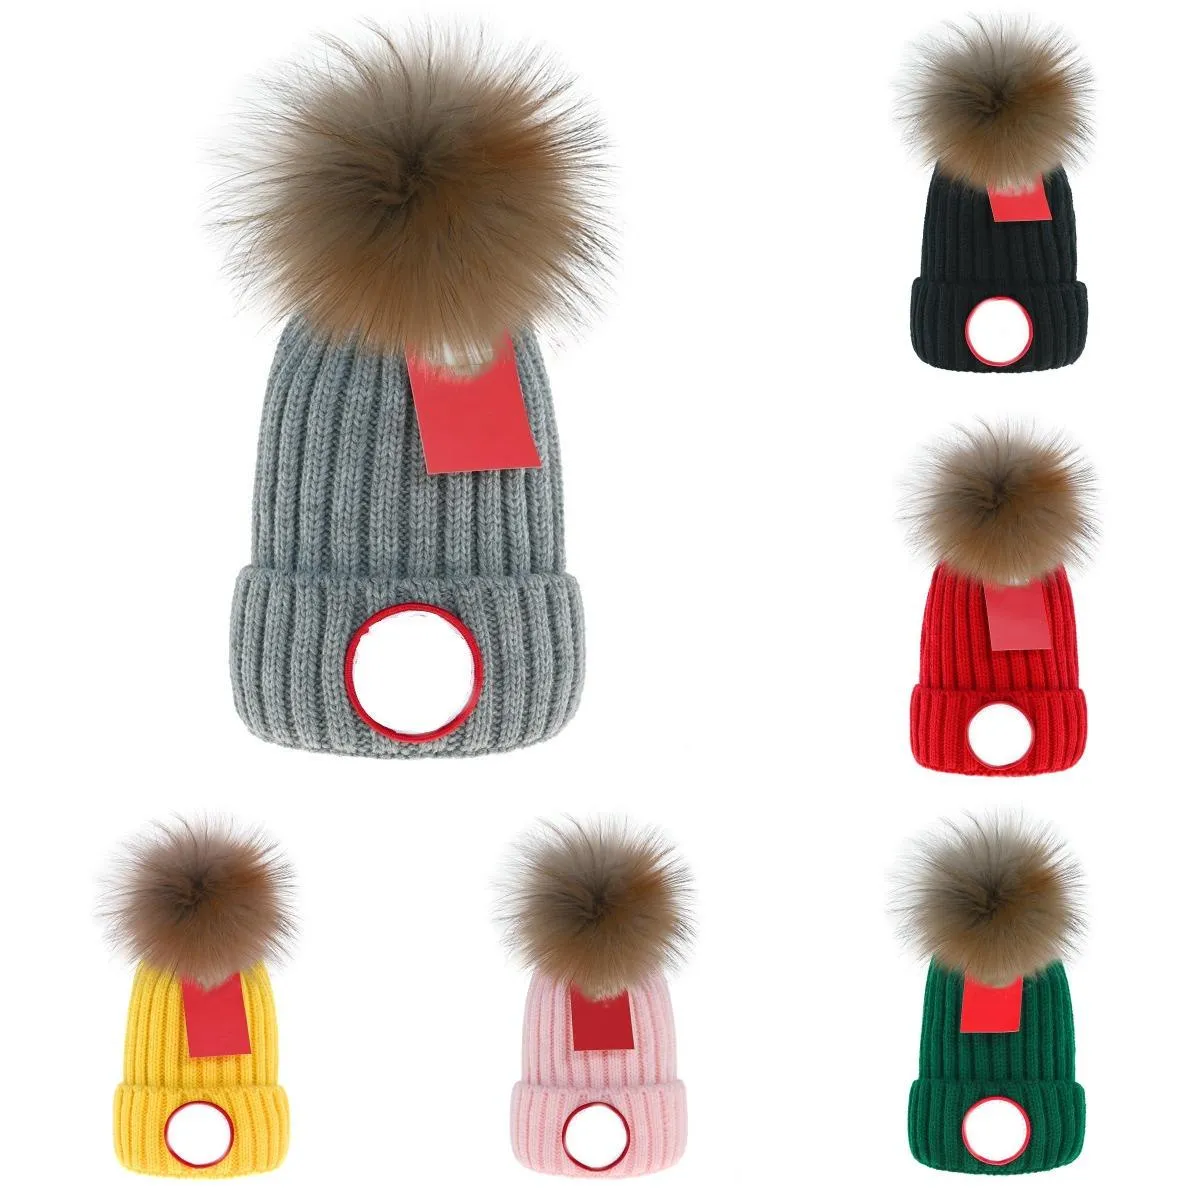 Şapka Beanie Şapkalar Sıcak Tasarımcı Örgü Kış Örgü Erkek ve Kadınlar Kapağı Mektubu tıknaz Bonnet Sonbahar/Kış Termal Unisex Kafatası Beanies Moda Beanie/Kafatası Markası Günlük